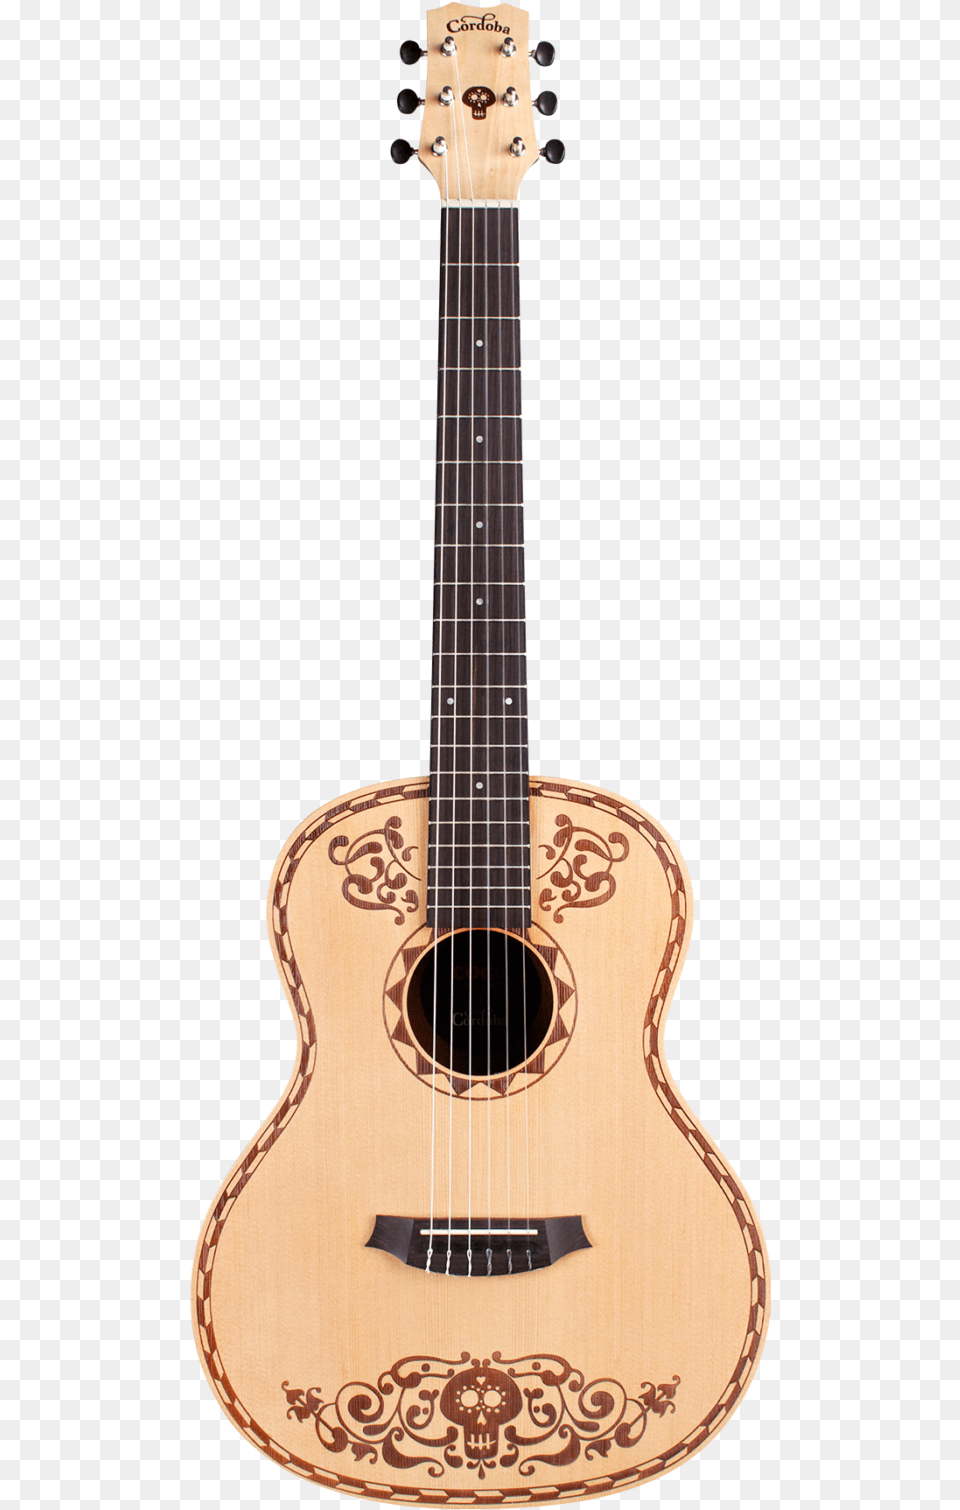 Cordoba Disney Pixar Coco X Classical Guitar Guitarra Coco Cordoba, Bass Guitar, Musical Instrument Png Image